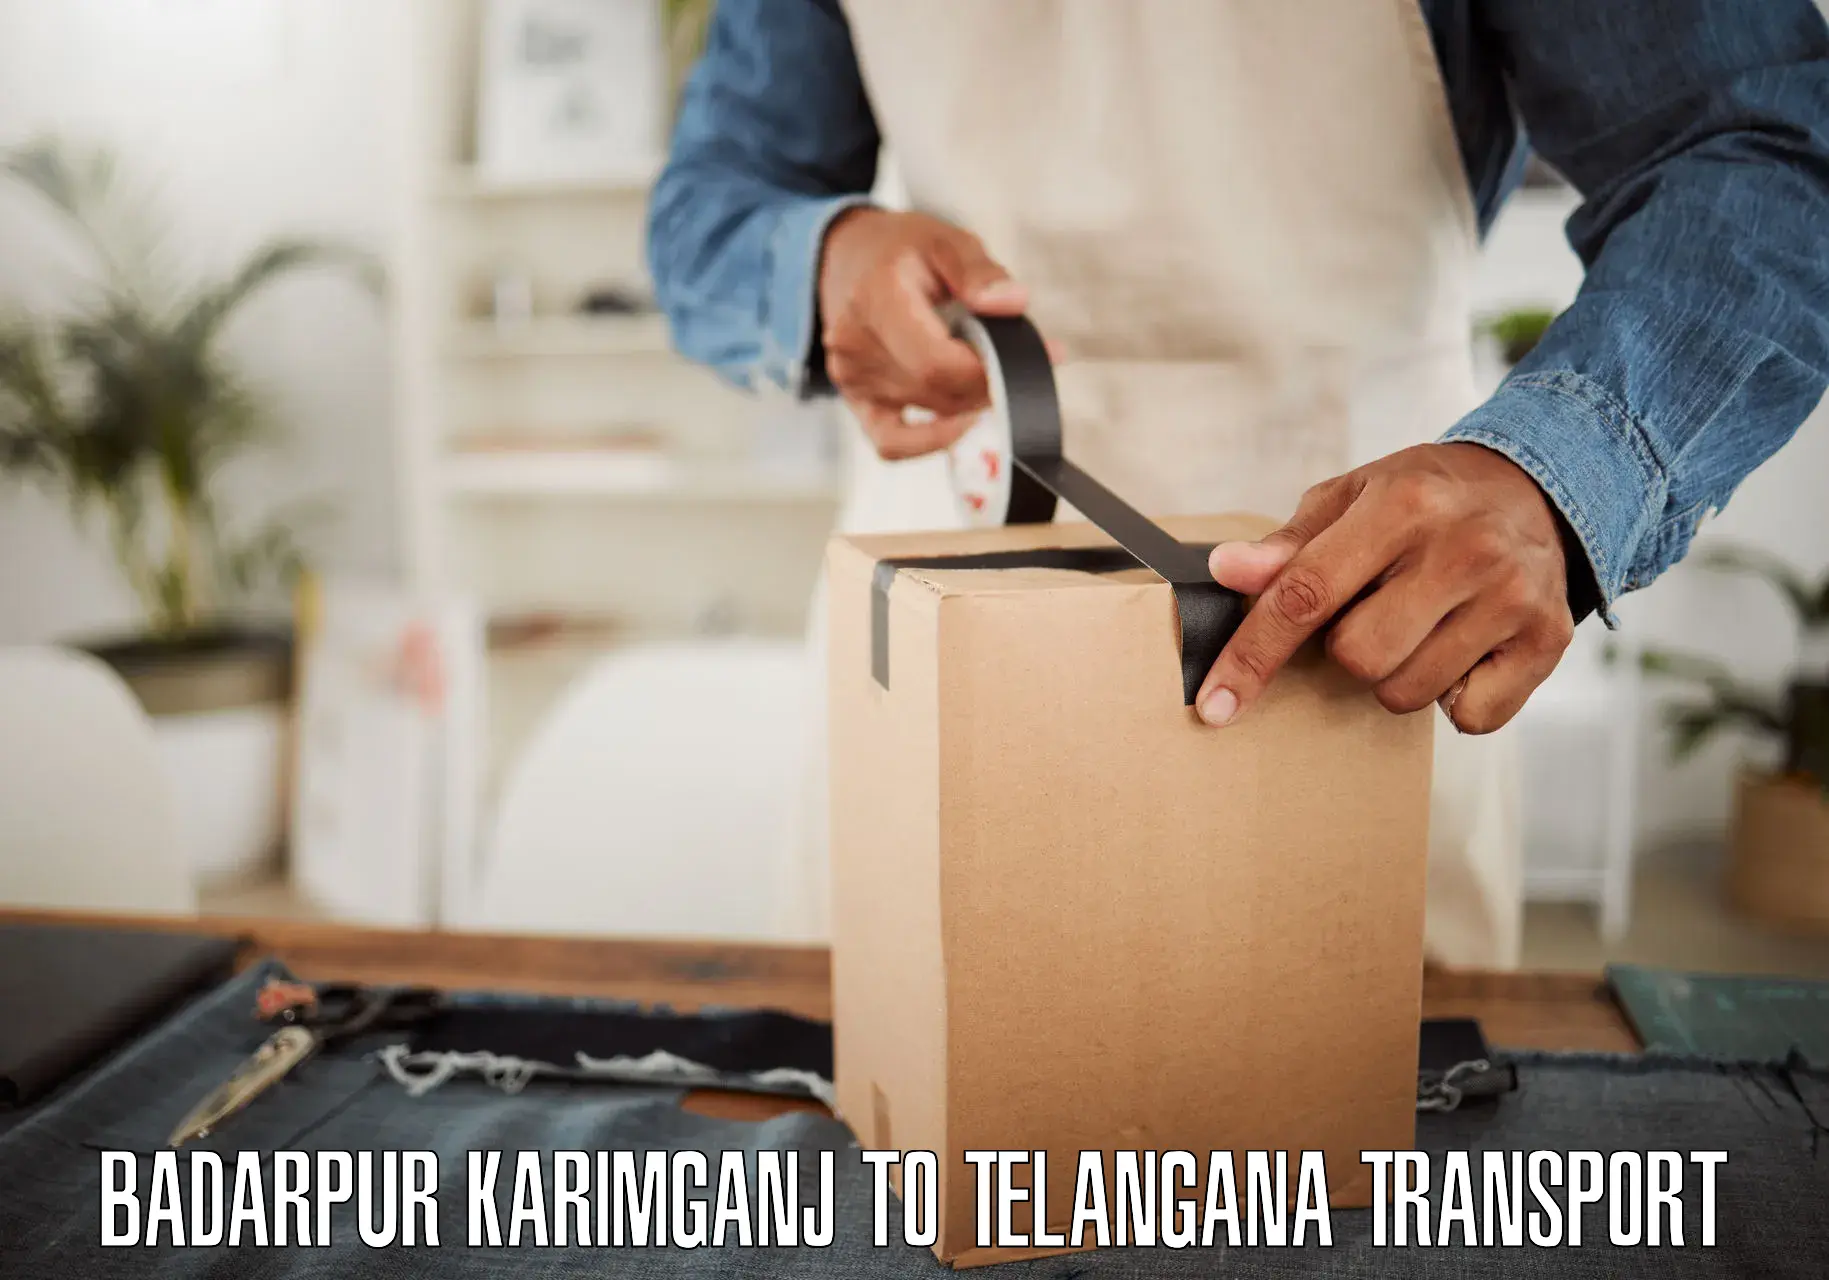 Online transport service Badarpur Karimganj to Warangal